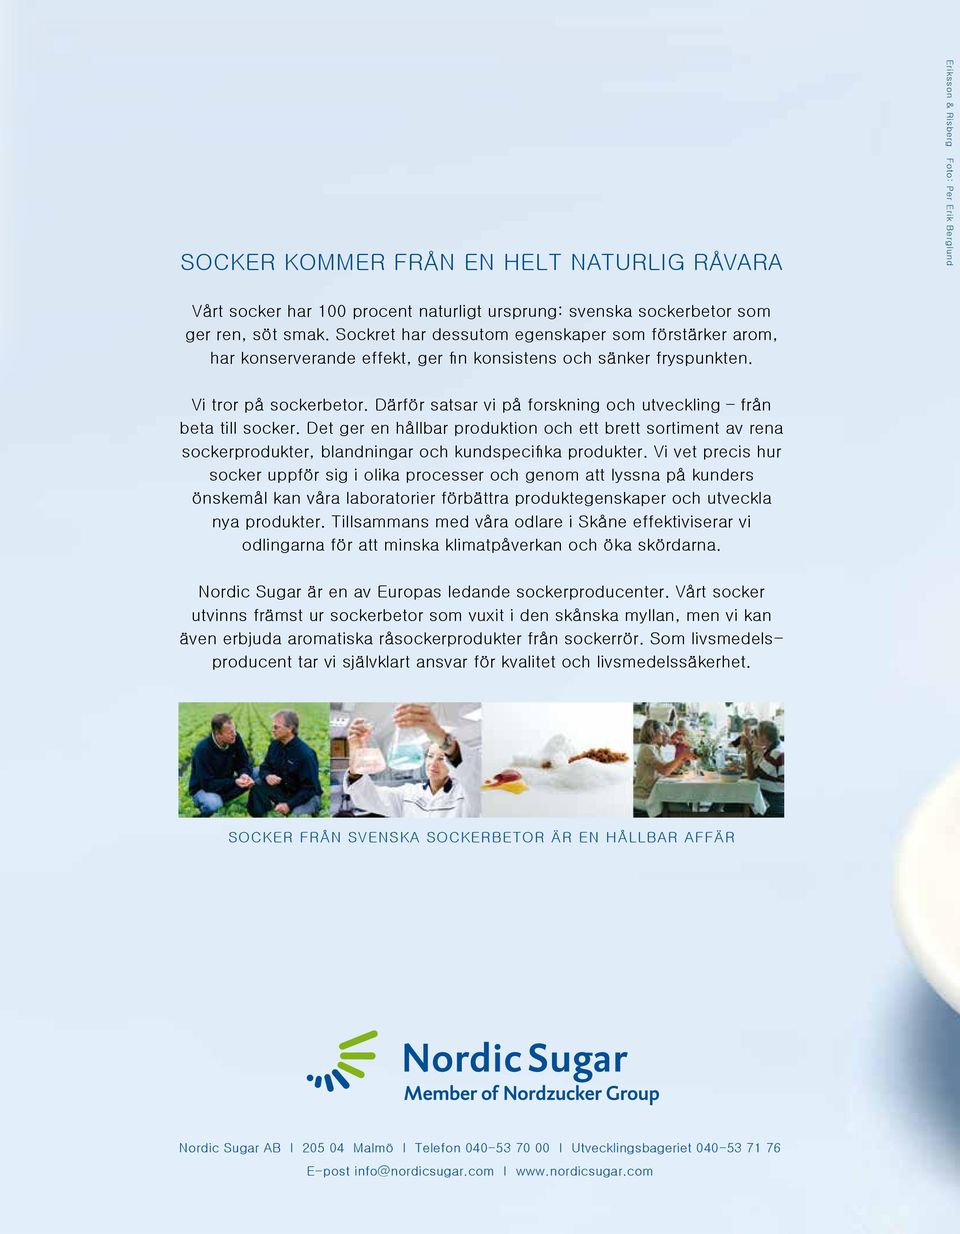 Därför satsar vi på forskning och utveckling från beta till socker. Det ger en hållbar produktion och ett brett sortiment av rena sockerprodukter, blandningar och kundspecifika produkter.